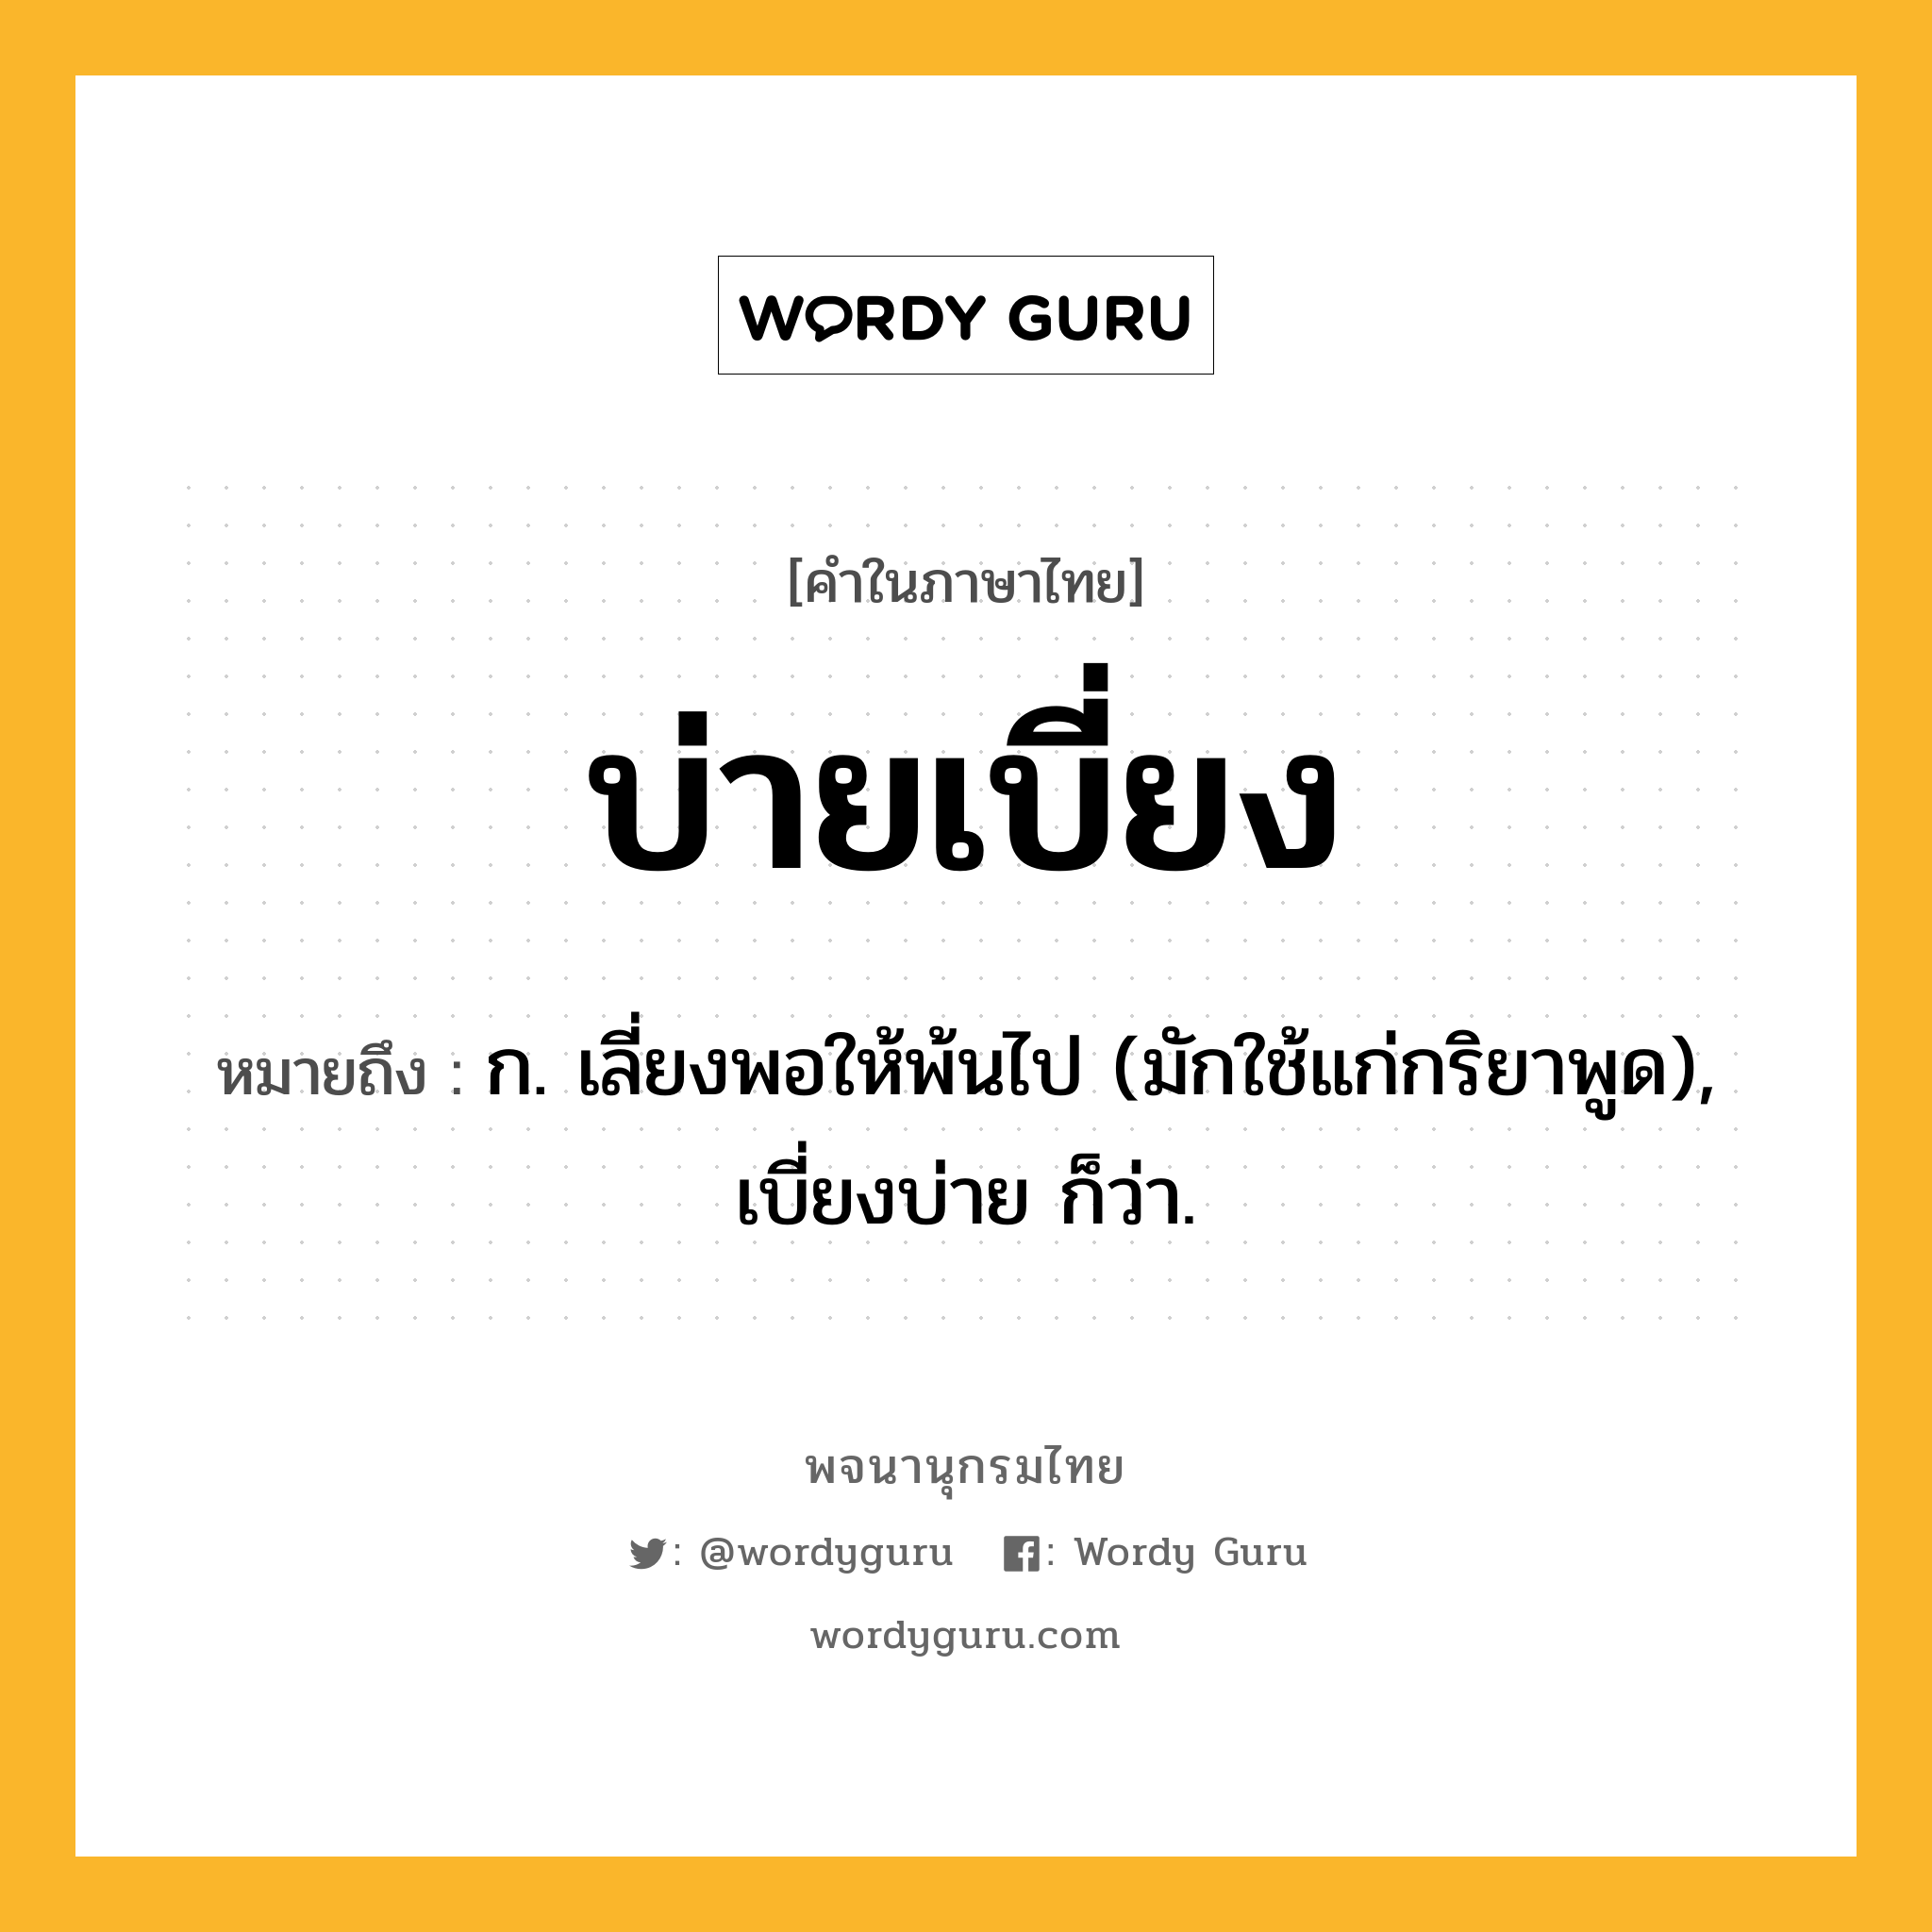 บ่ายเบี่ยง ความหมาย หมายถึงอะไร?, คำในภาษาไทย บ่ายเบี่ยง หมายถึง ก. เลี่ยงพอให้พ้นไป (มักใช้แก่กริยาพูด), เบี่ยงบ่าย ก็ว่า.